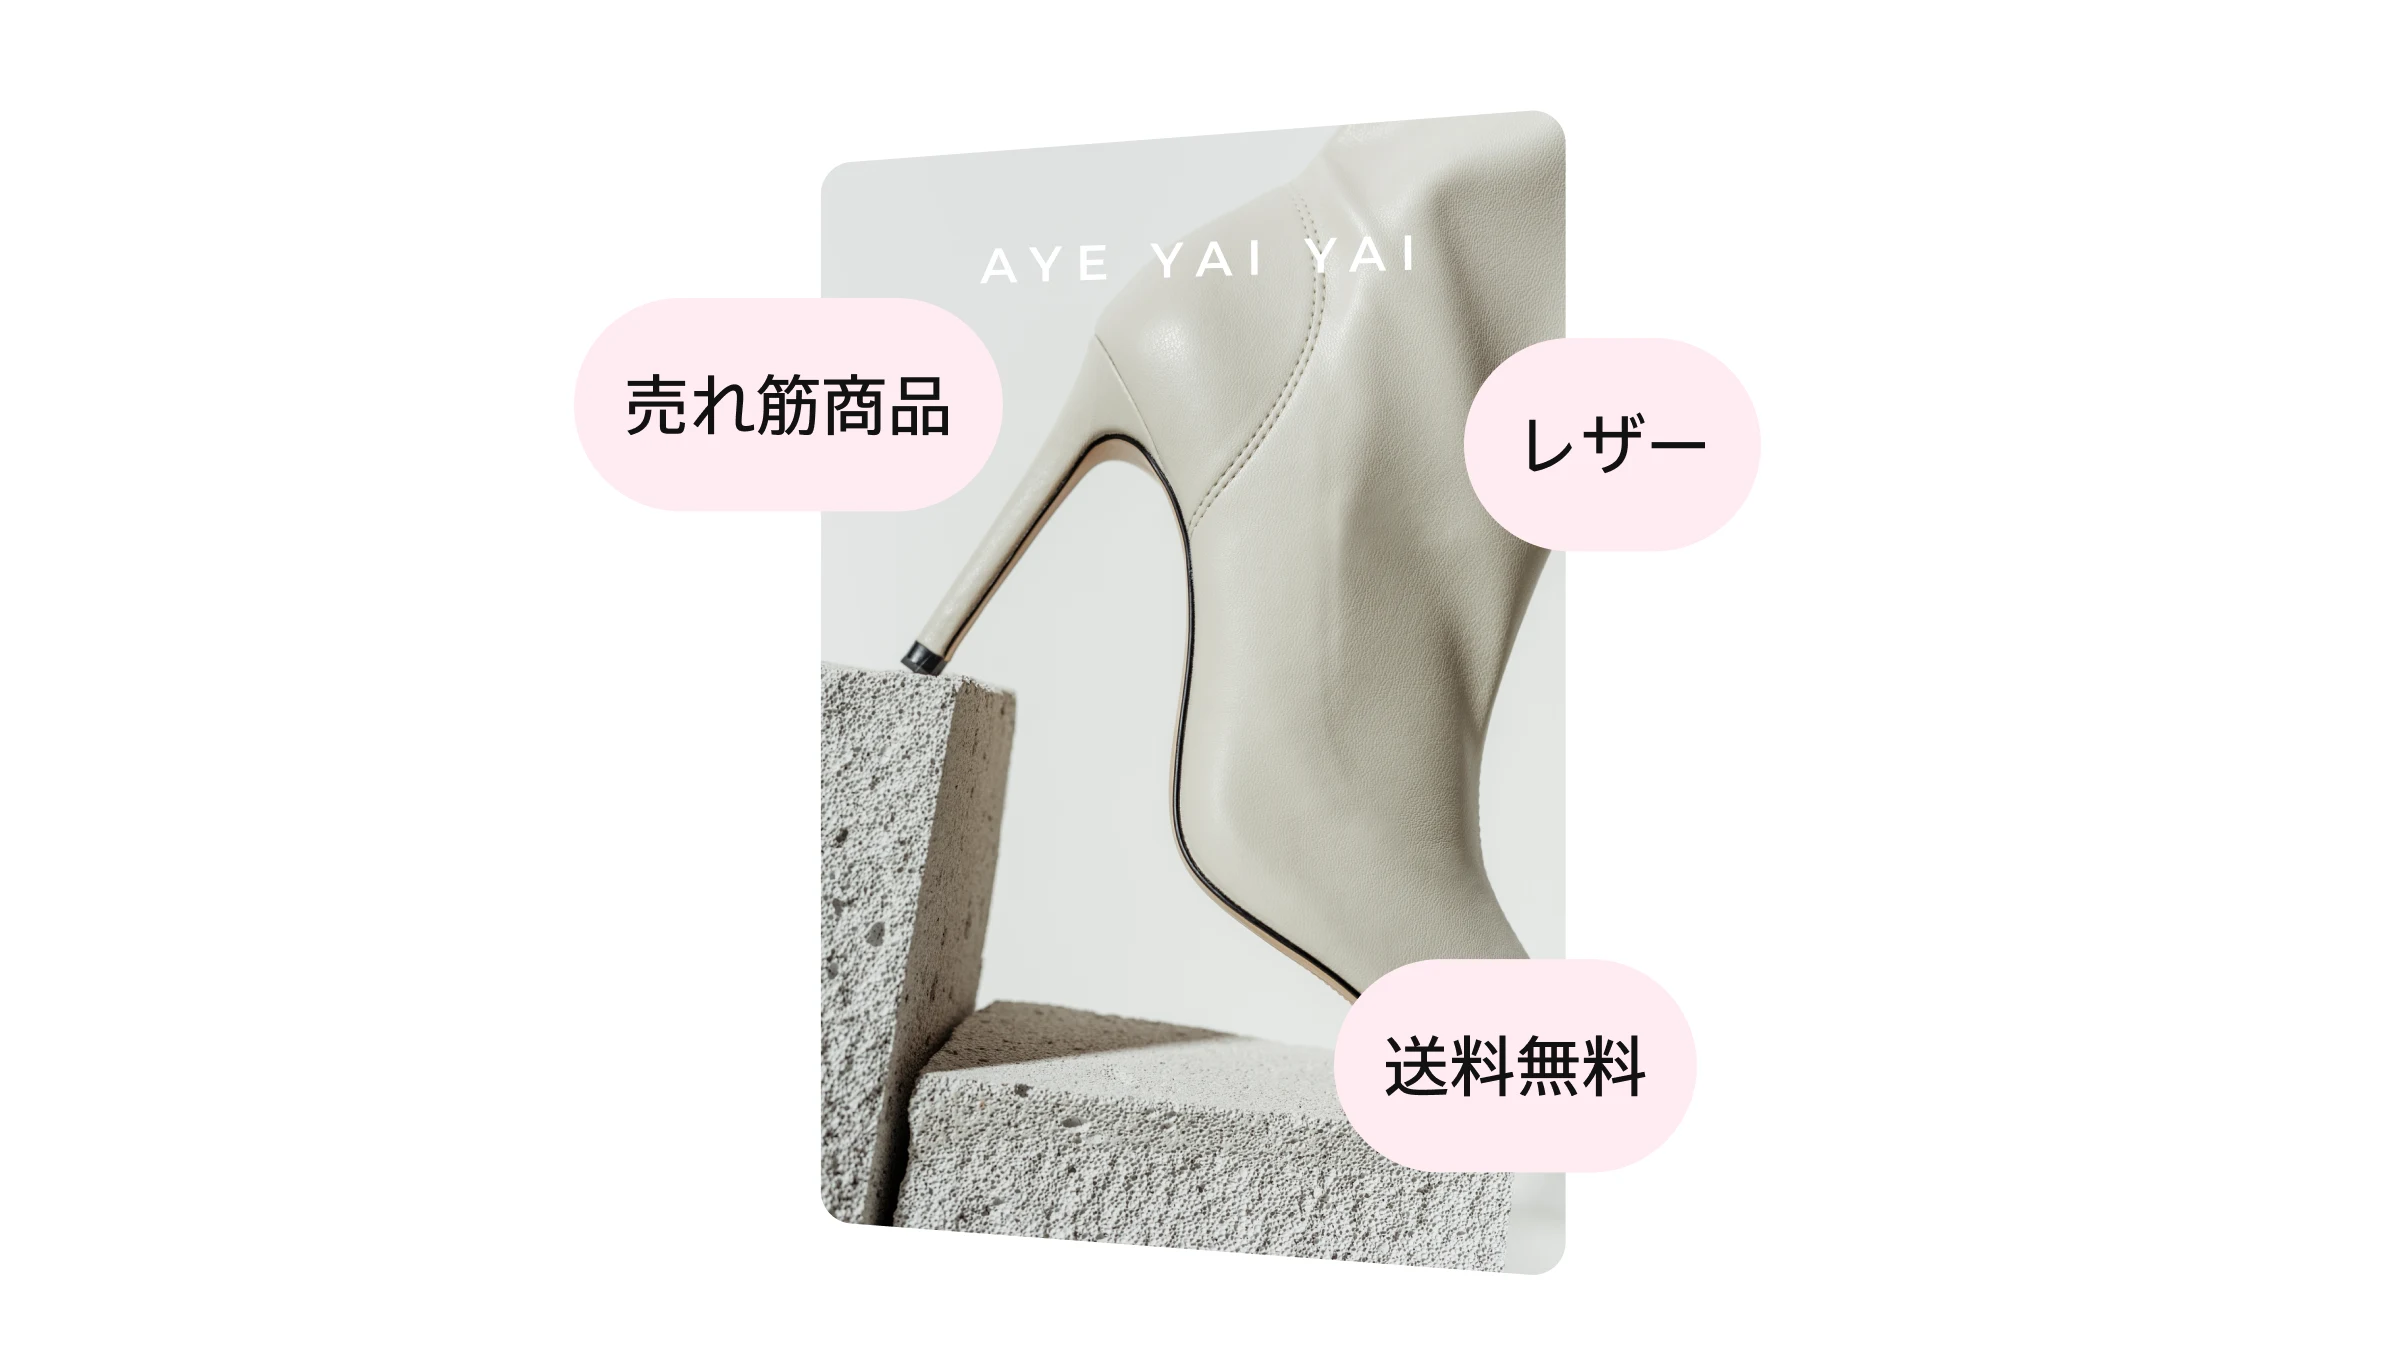 ホワイトレザーブーツをプロモートする Aye Yai Yai の広告、「売れ筋商品」と「送料無料」のテキスト入り。